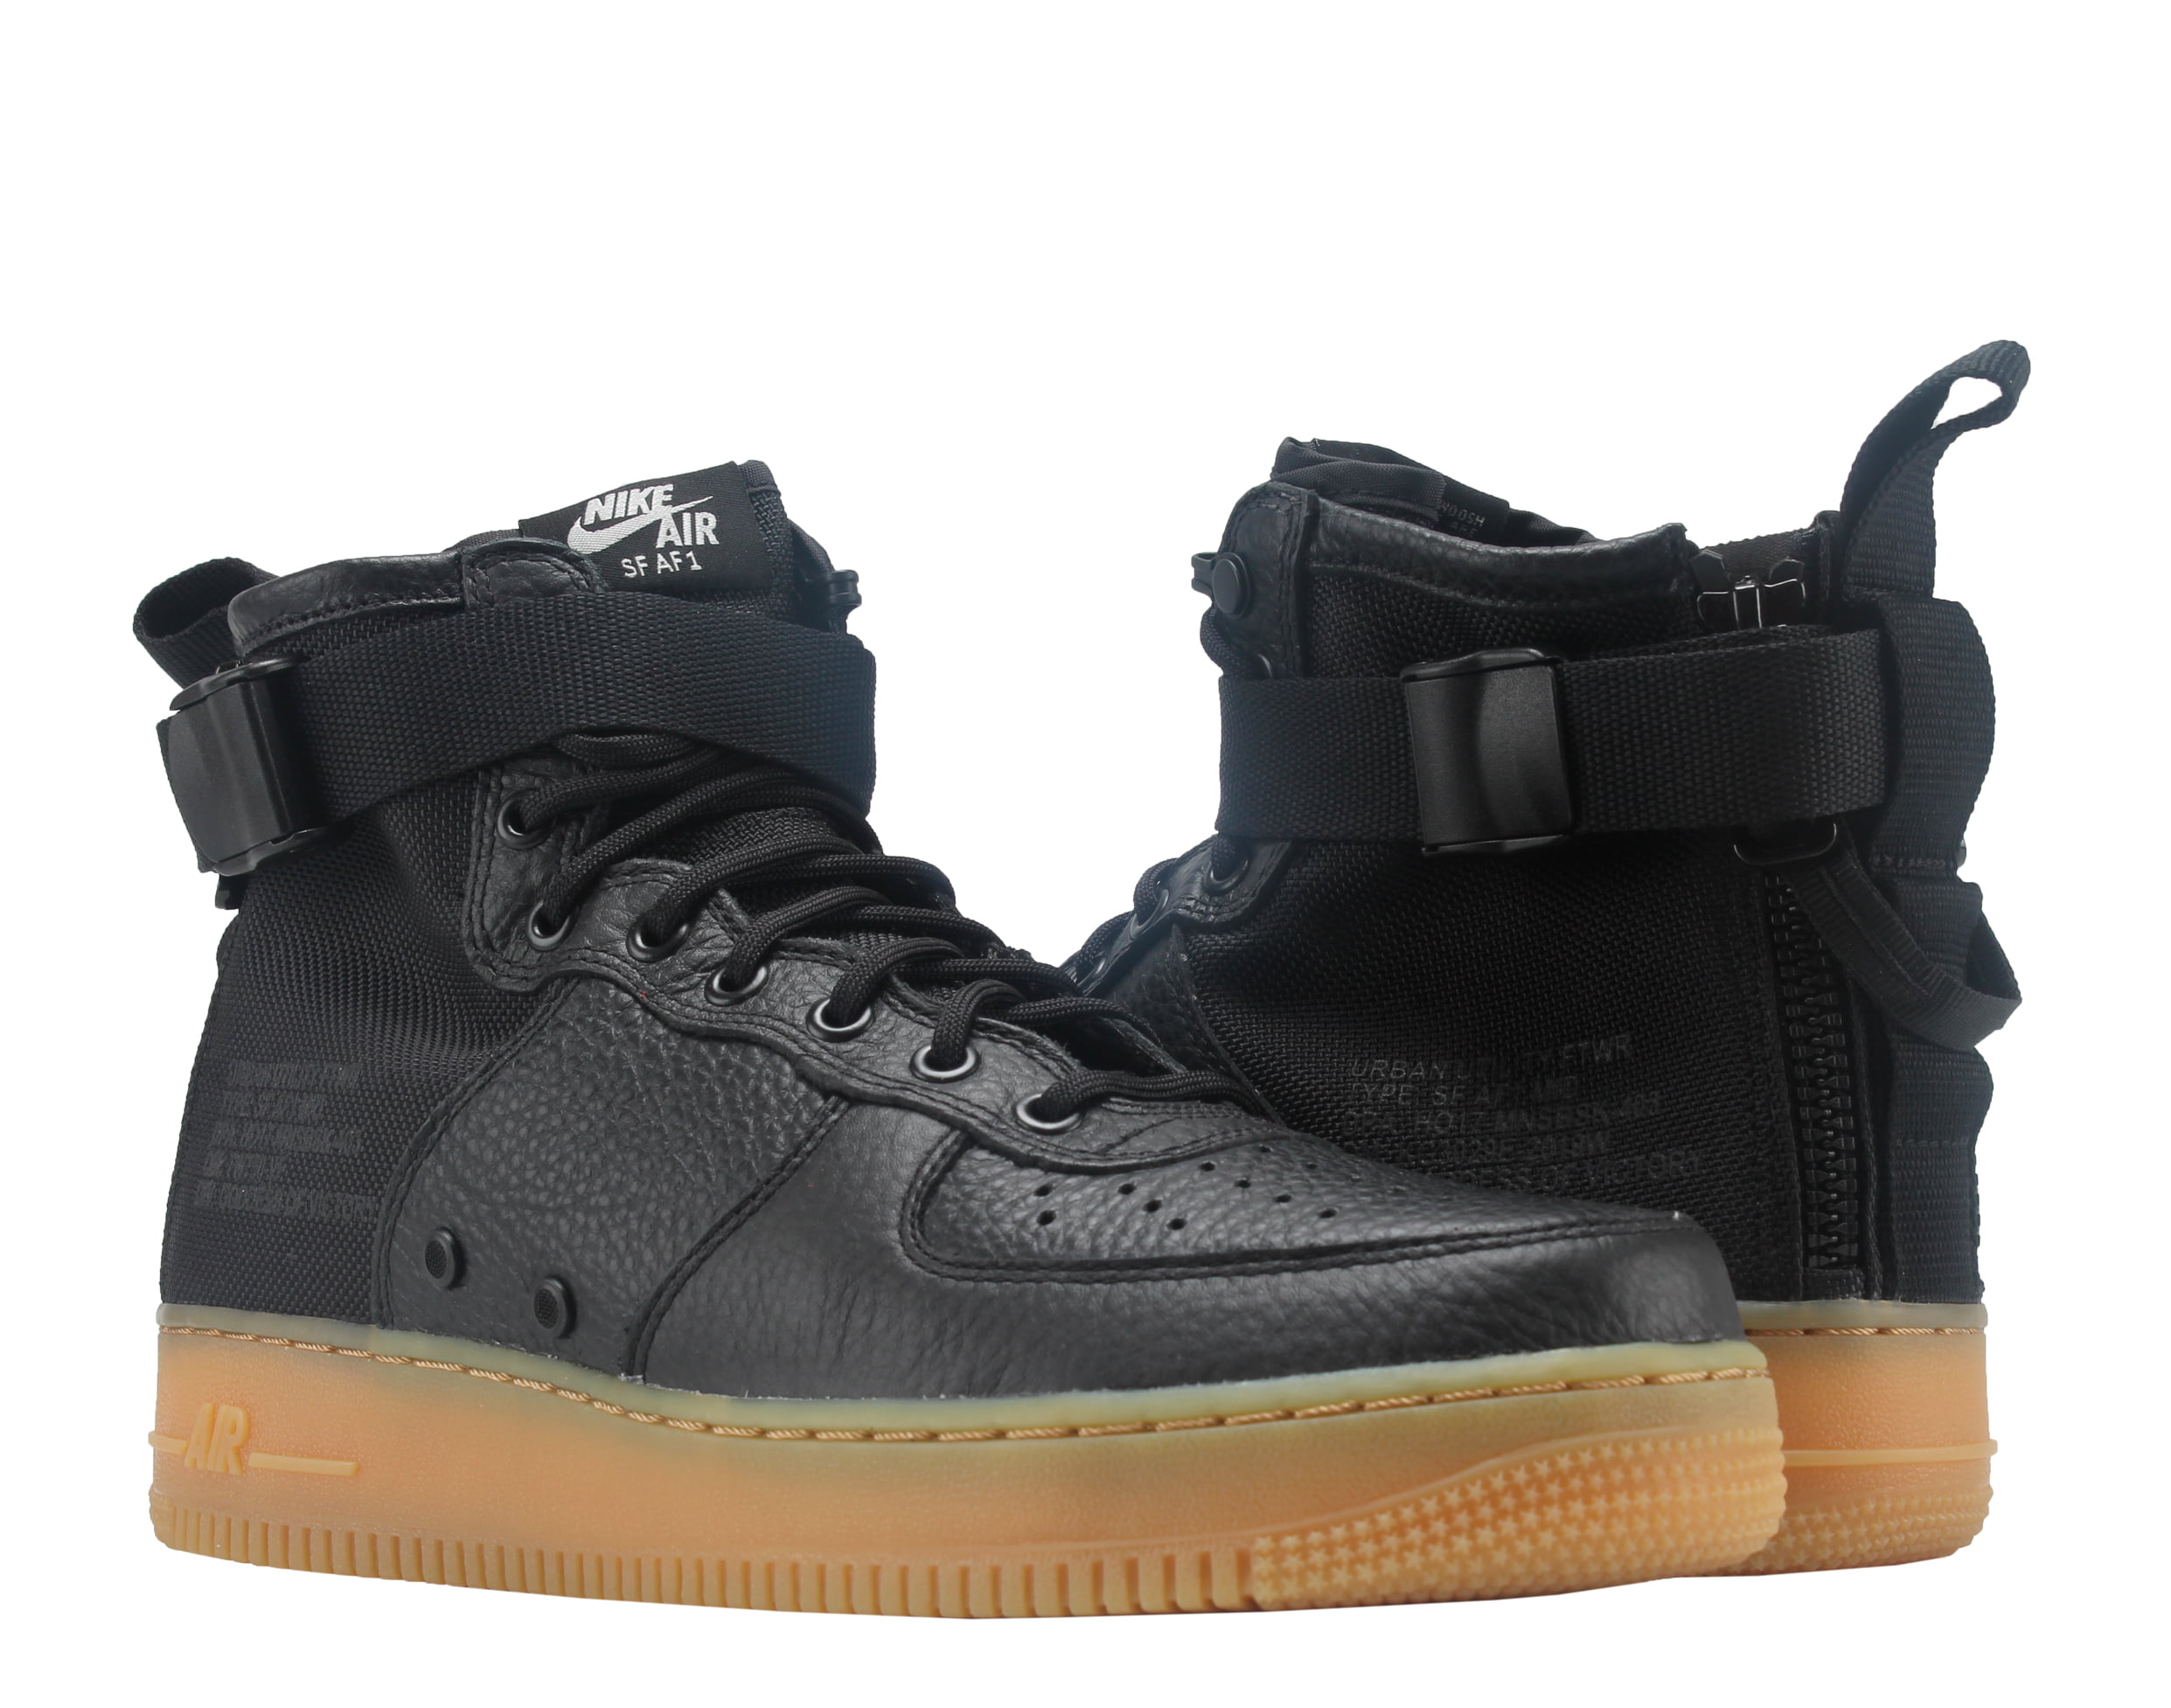 Nike SF Air Force 1 MID Shoes Black/Gum Brown Walmart.com